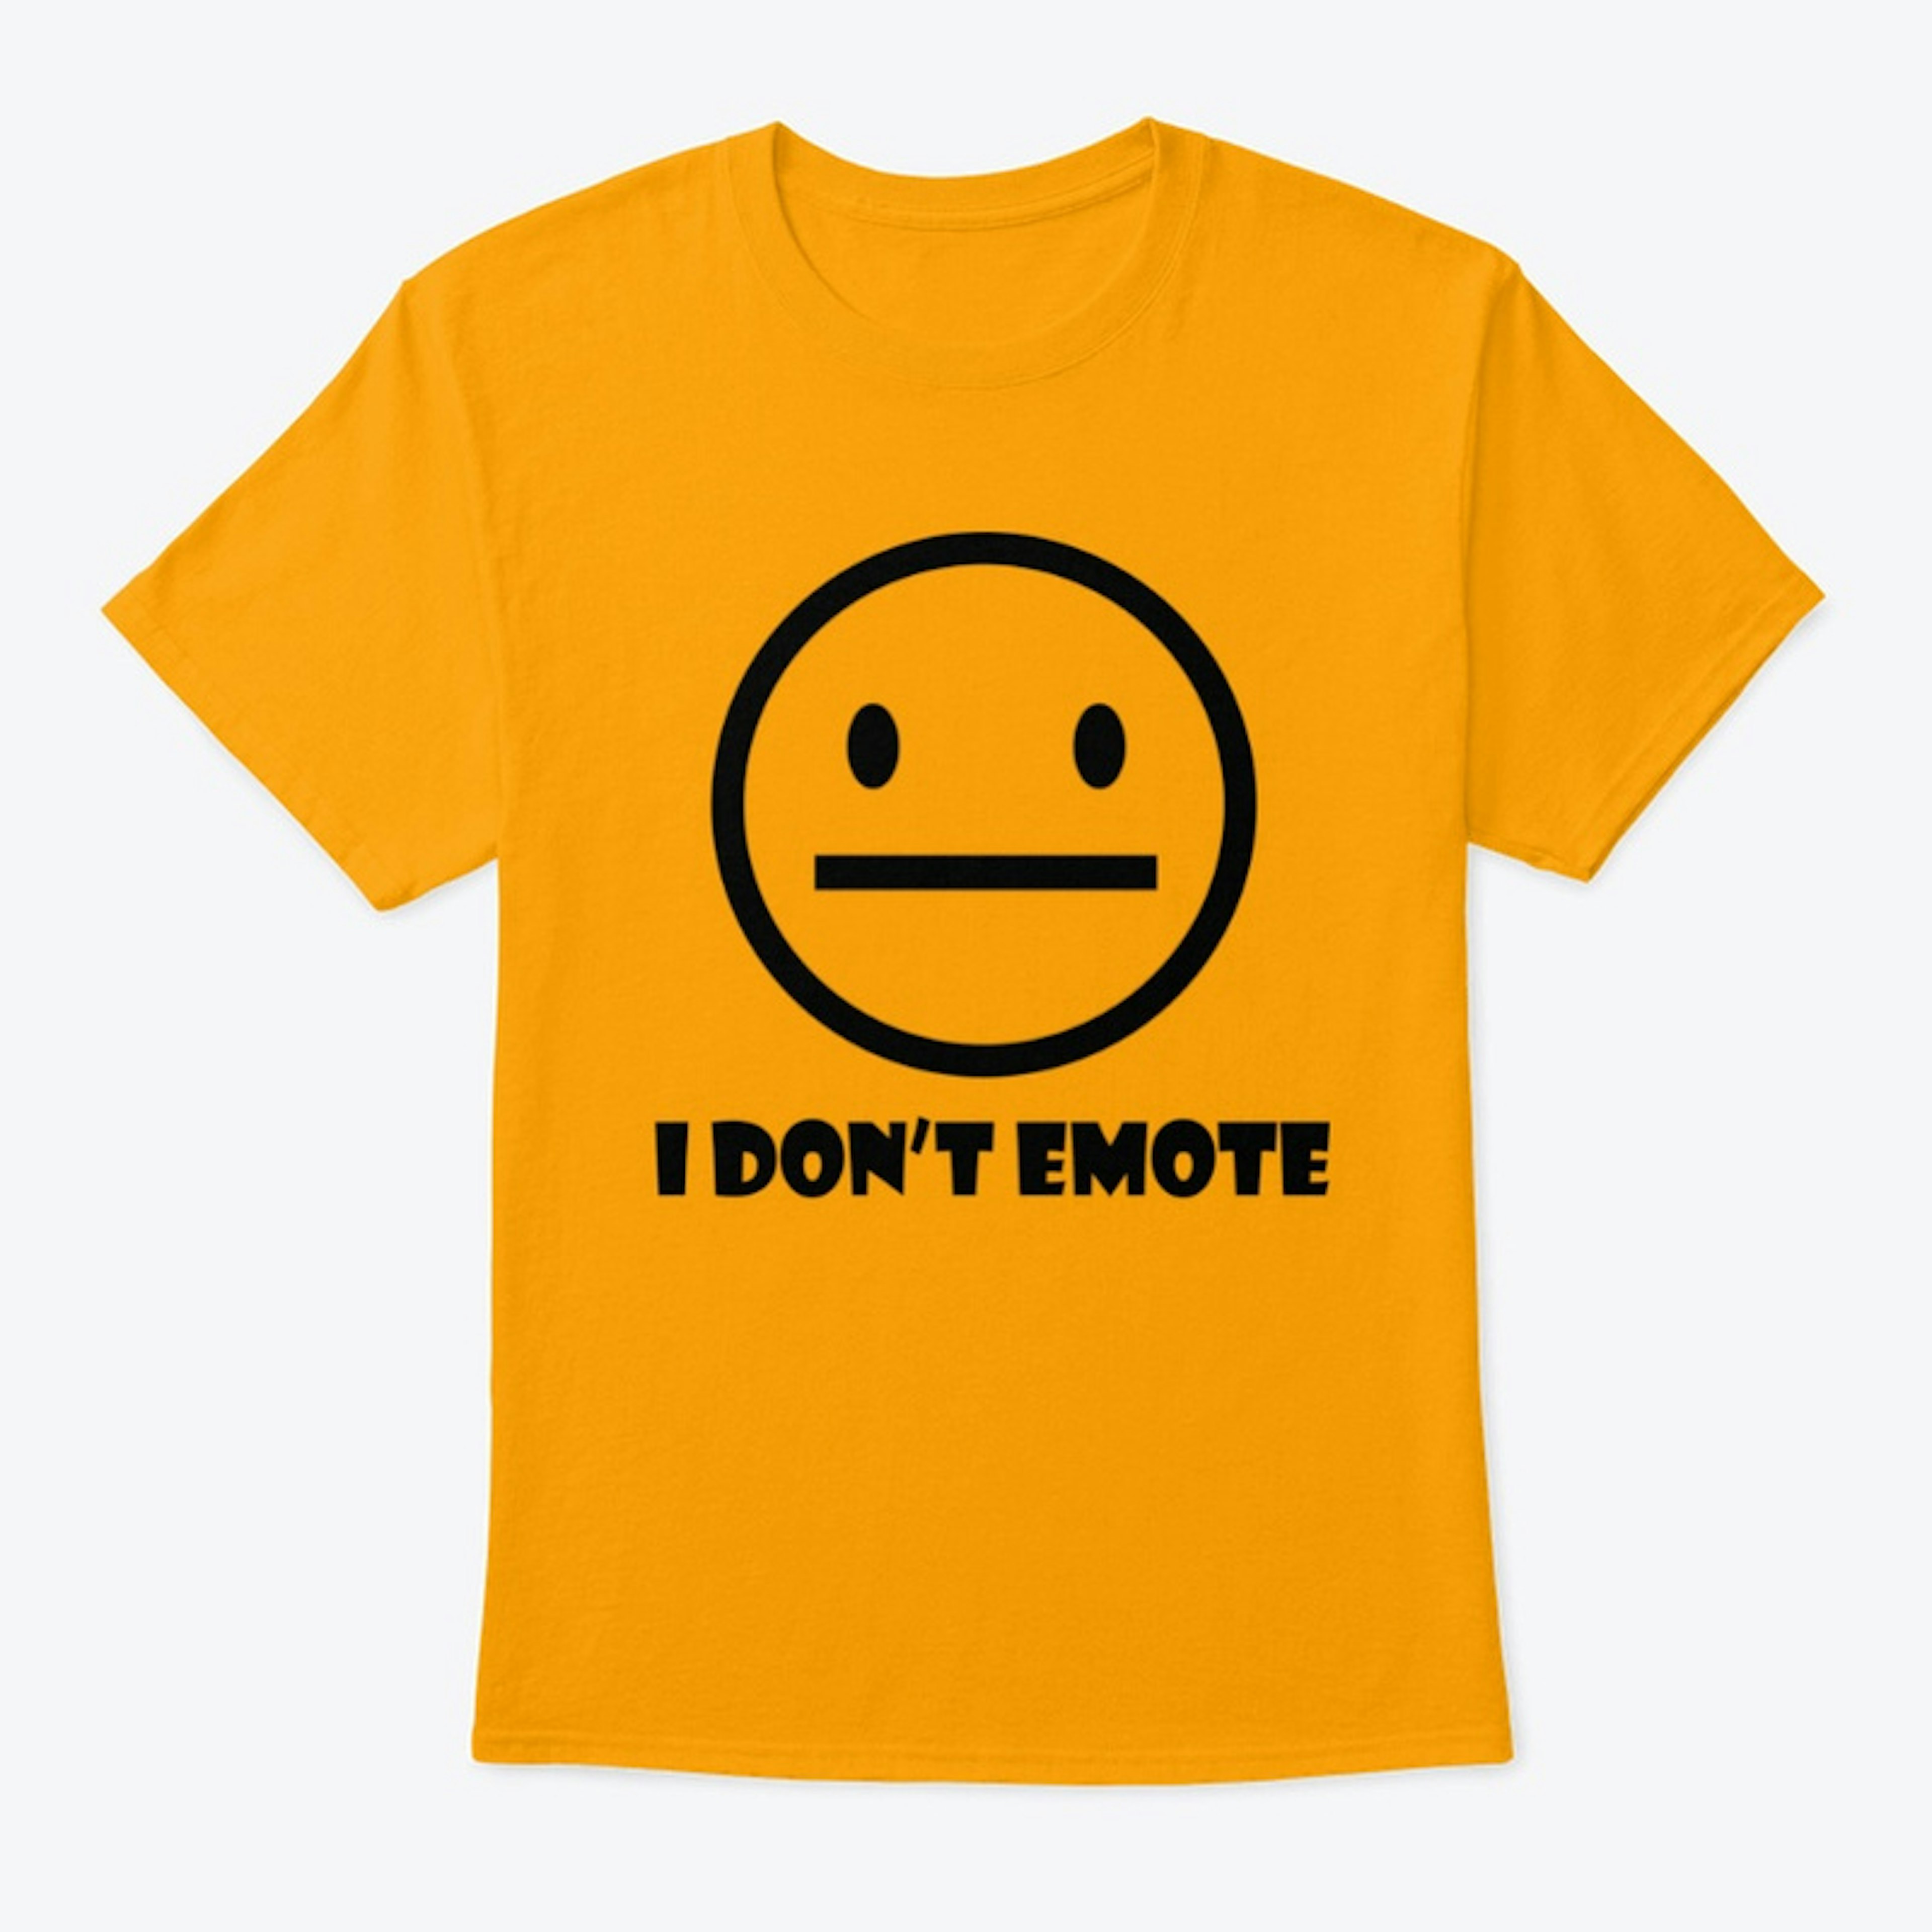 I don't emote